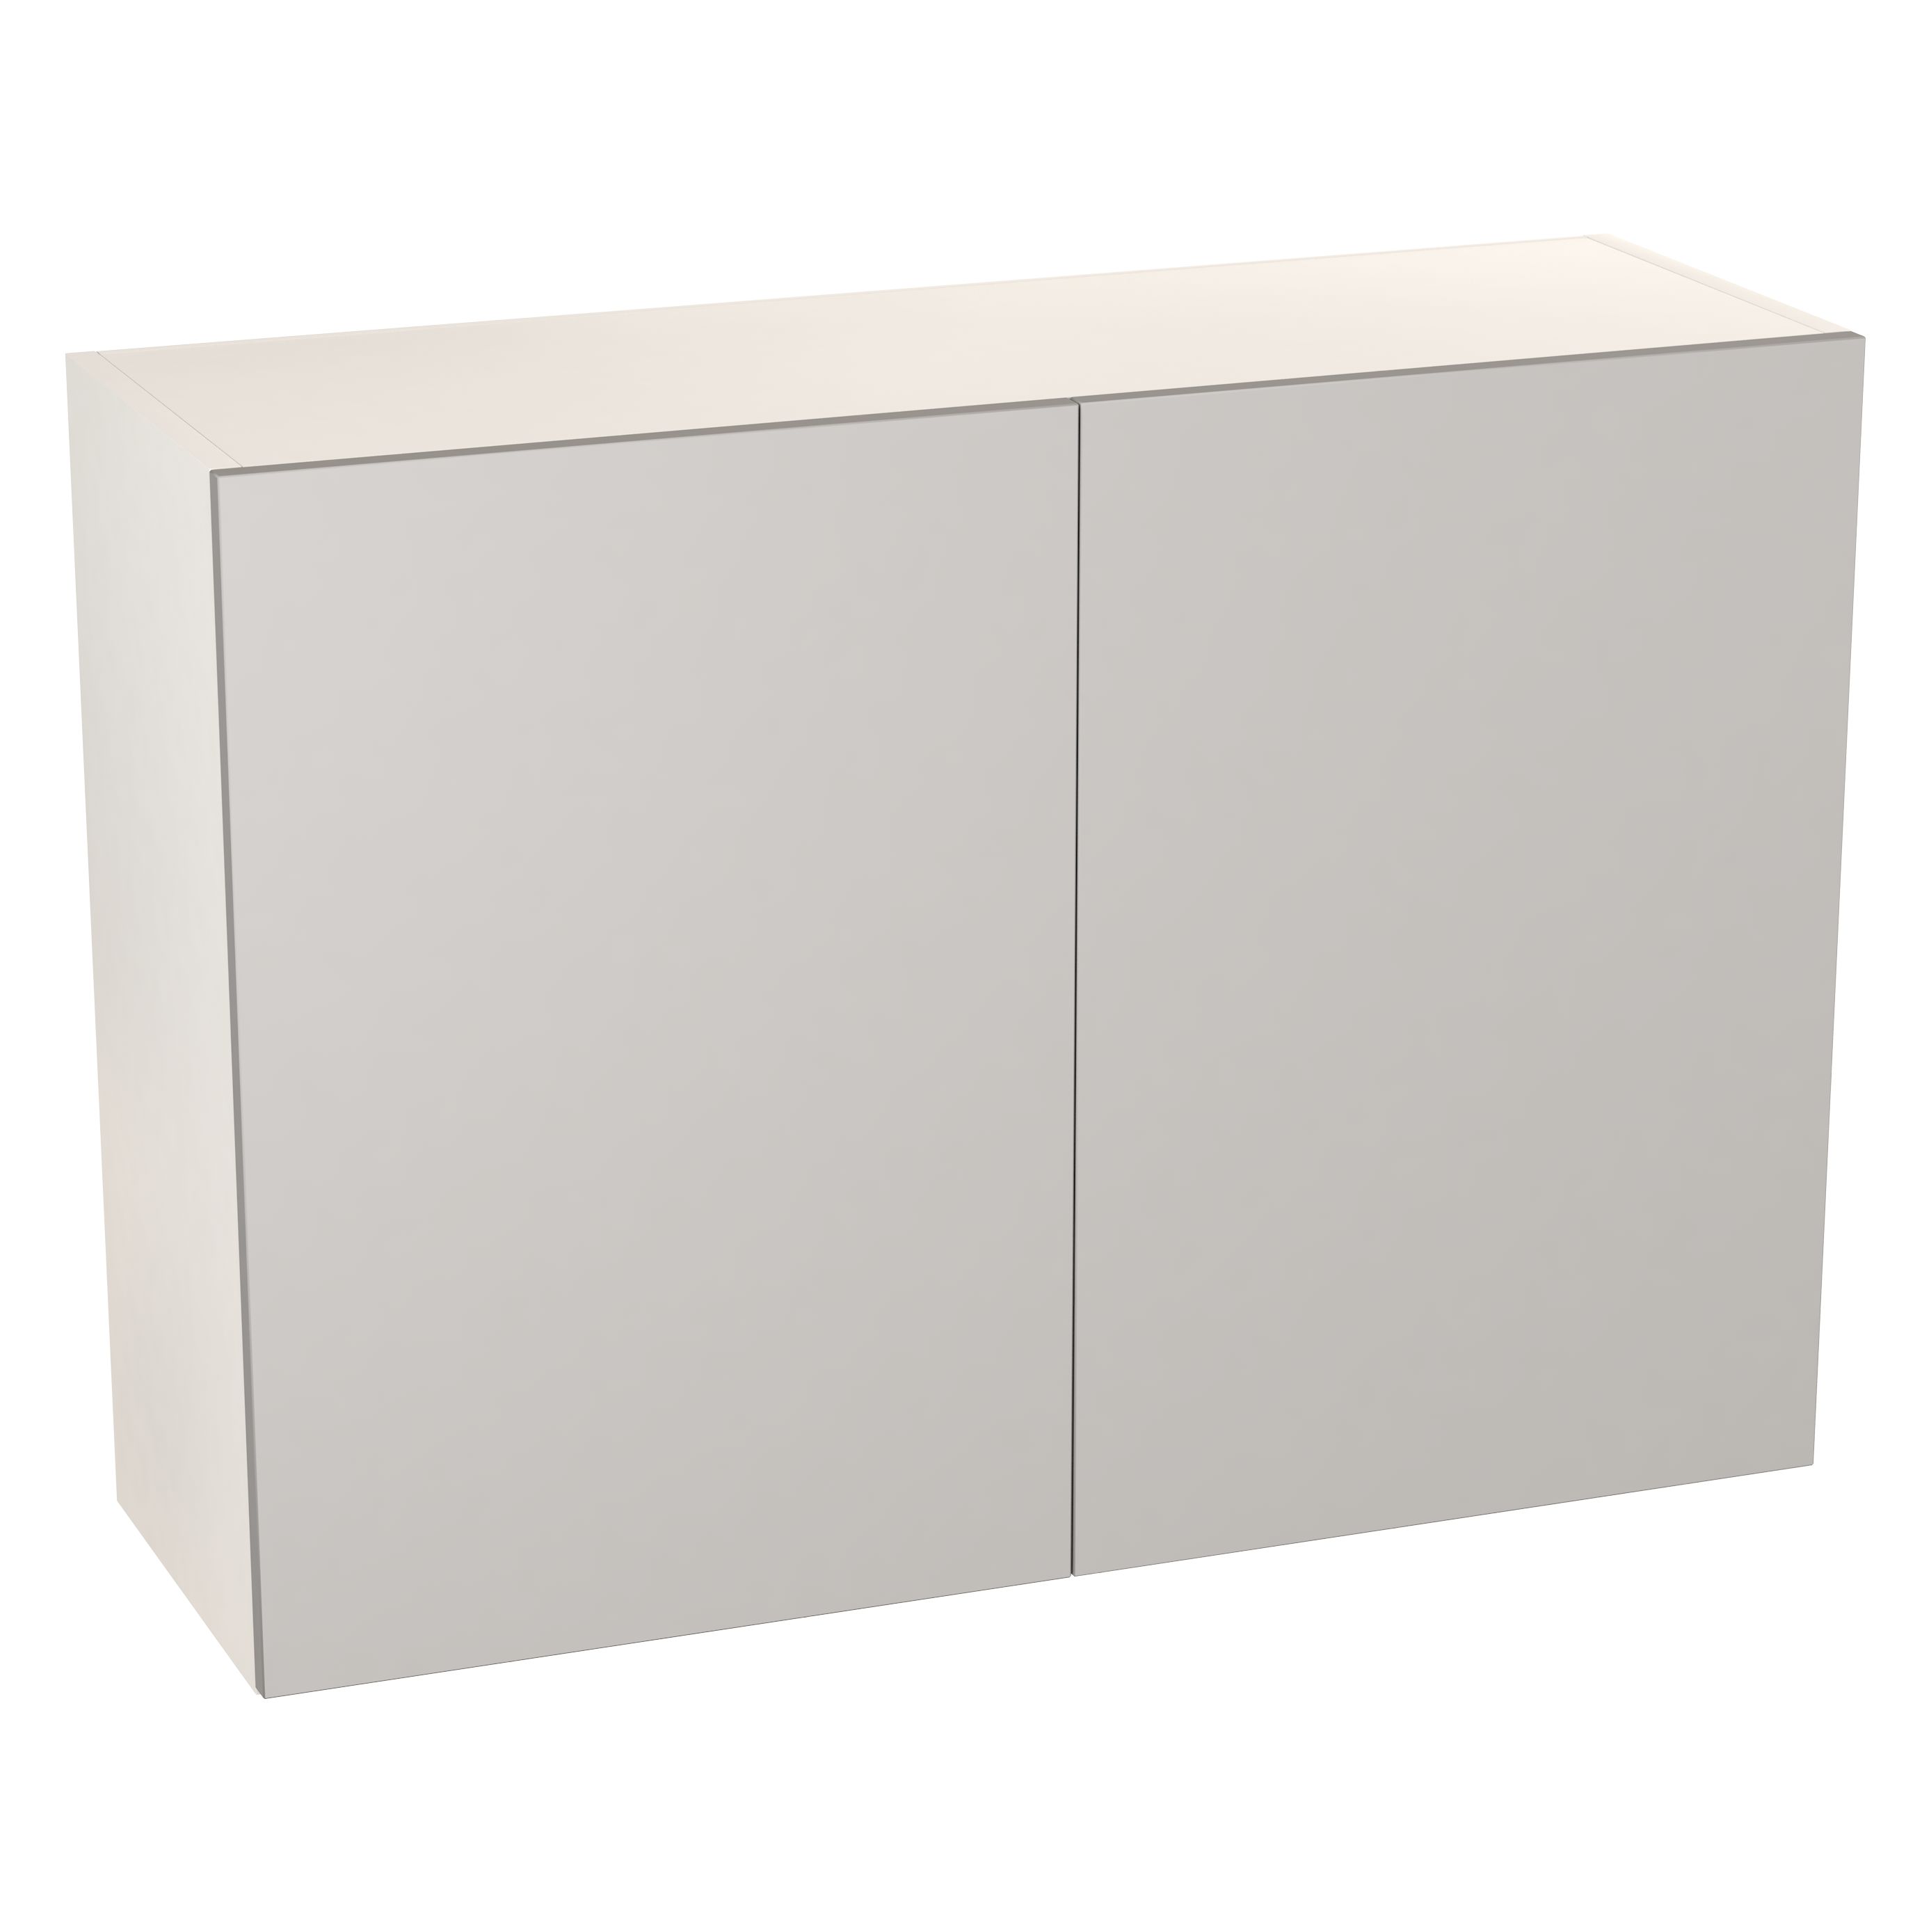 GoodHome Balsamita Matt grey slab Wall Kitchen cabinet (W)1000mm (H)720mm